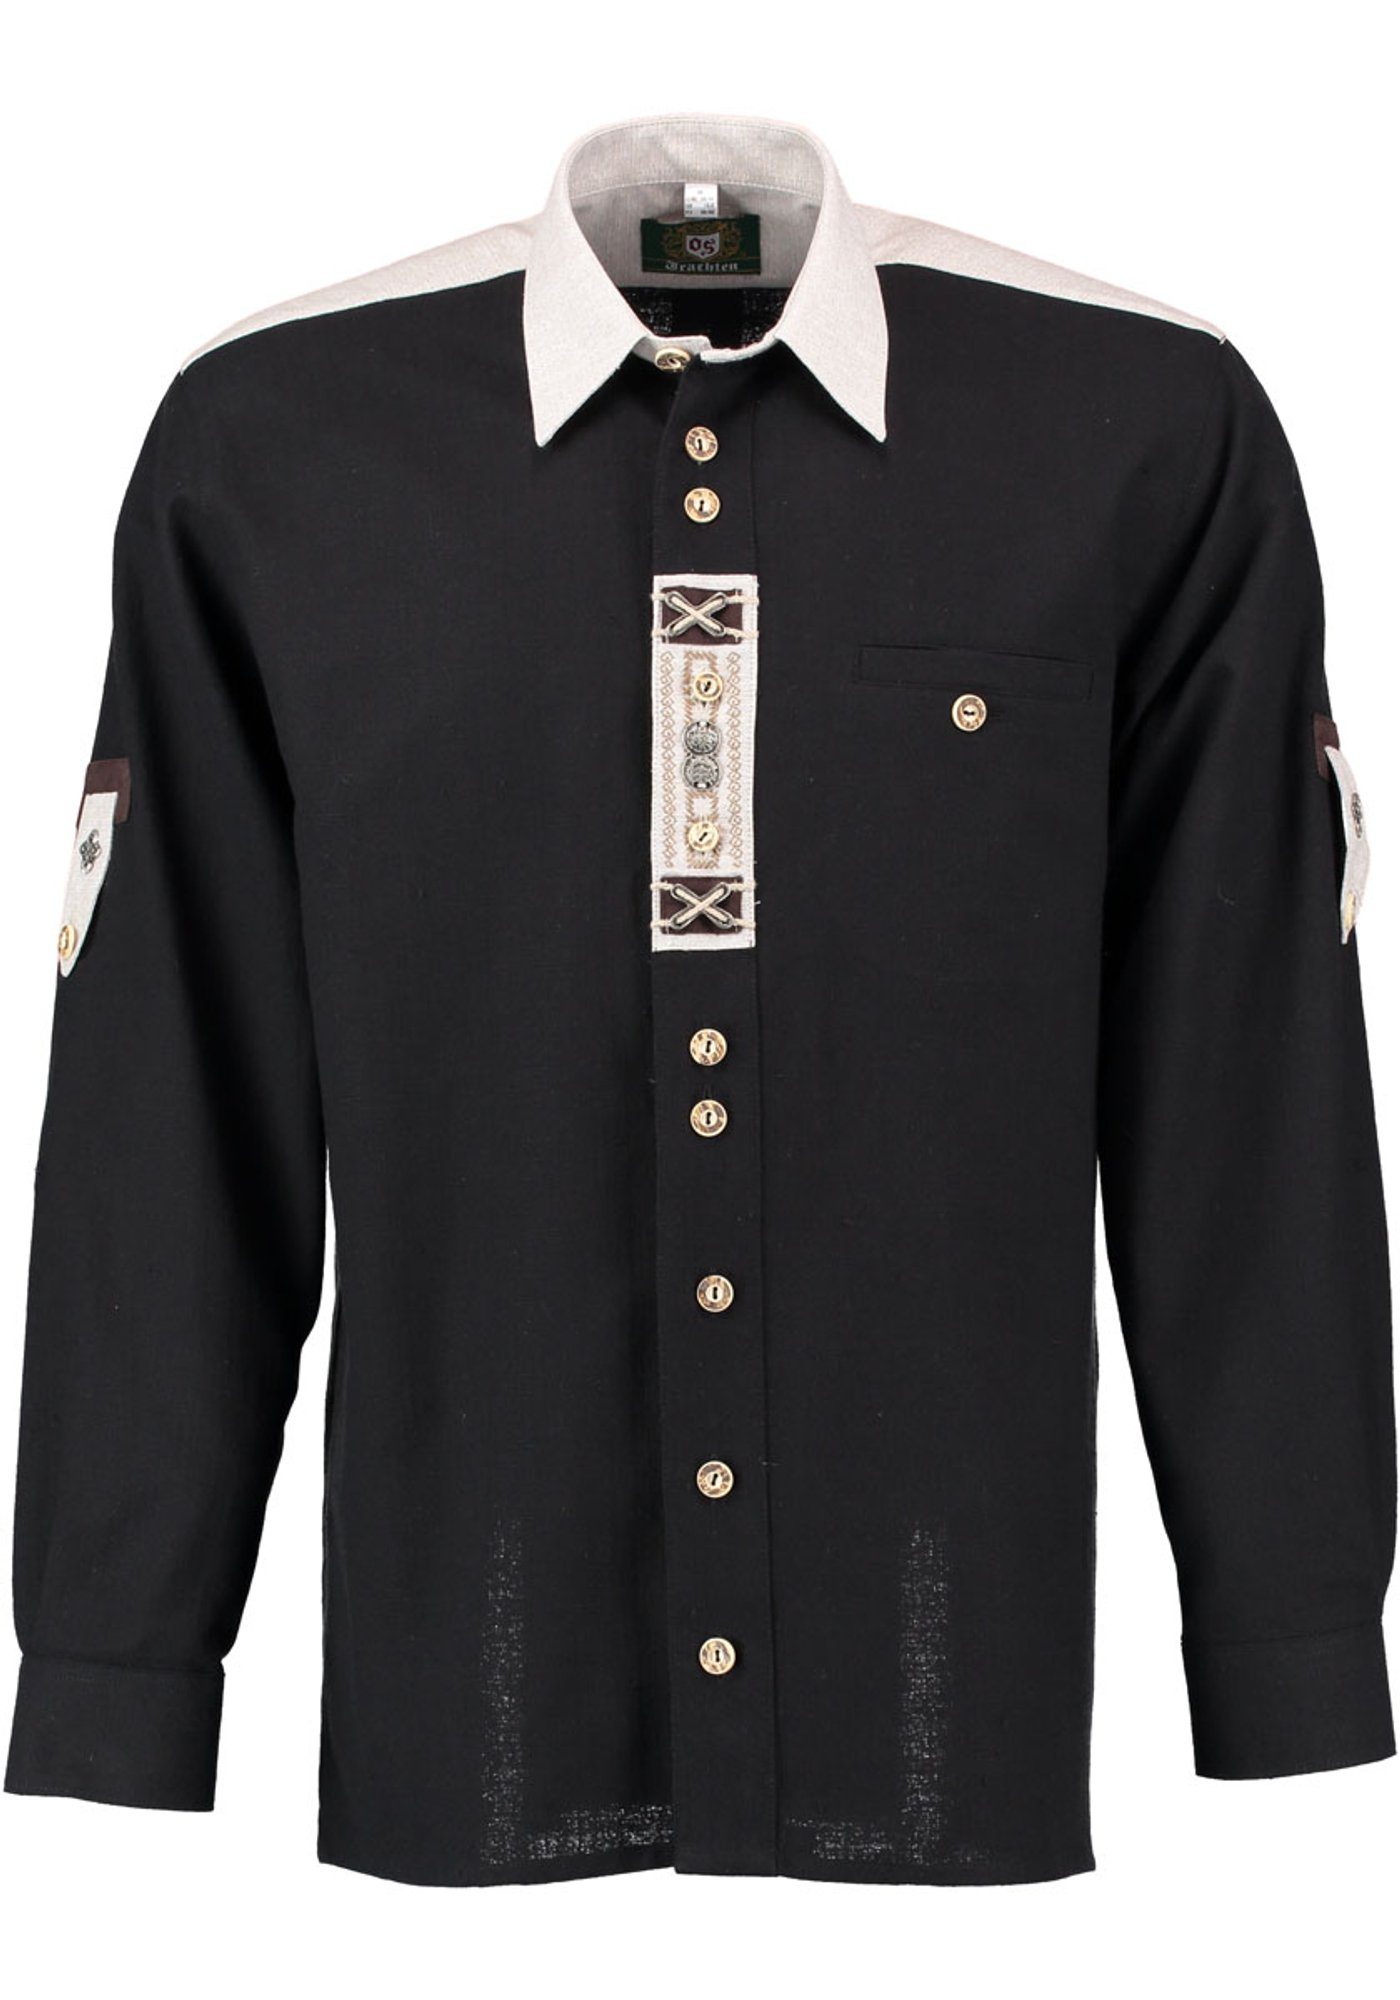 OS-Trachten Trachtenhemd Nvoion Langarmhemd mit Paspeltasche, Zierteile auf der Knopfleiste schwarz